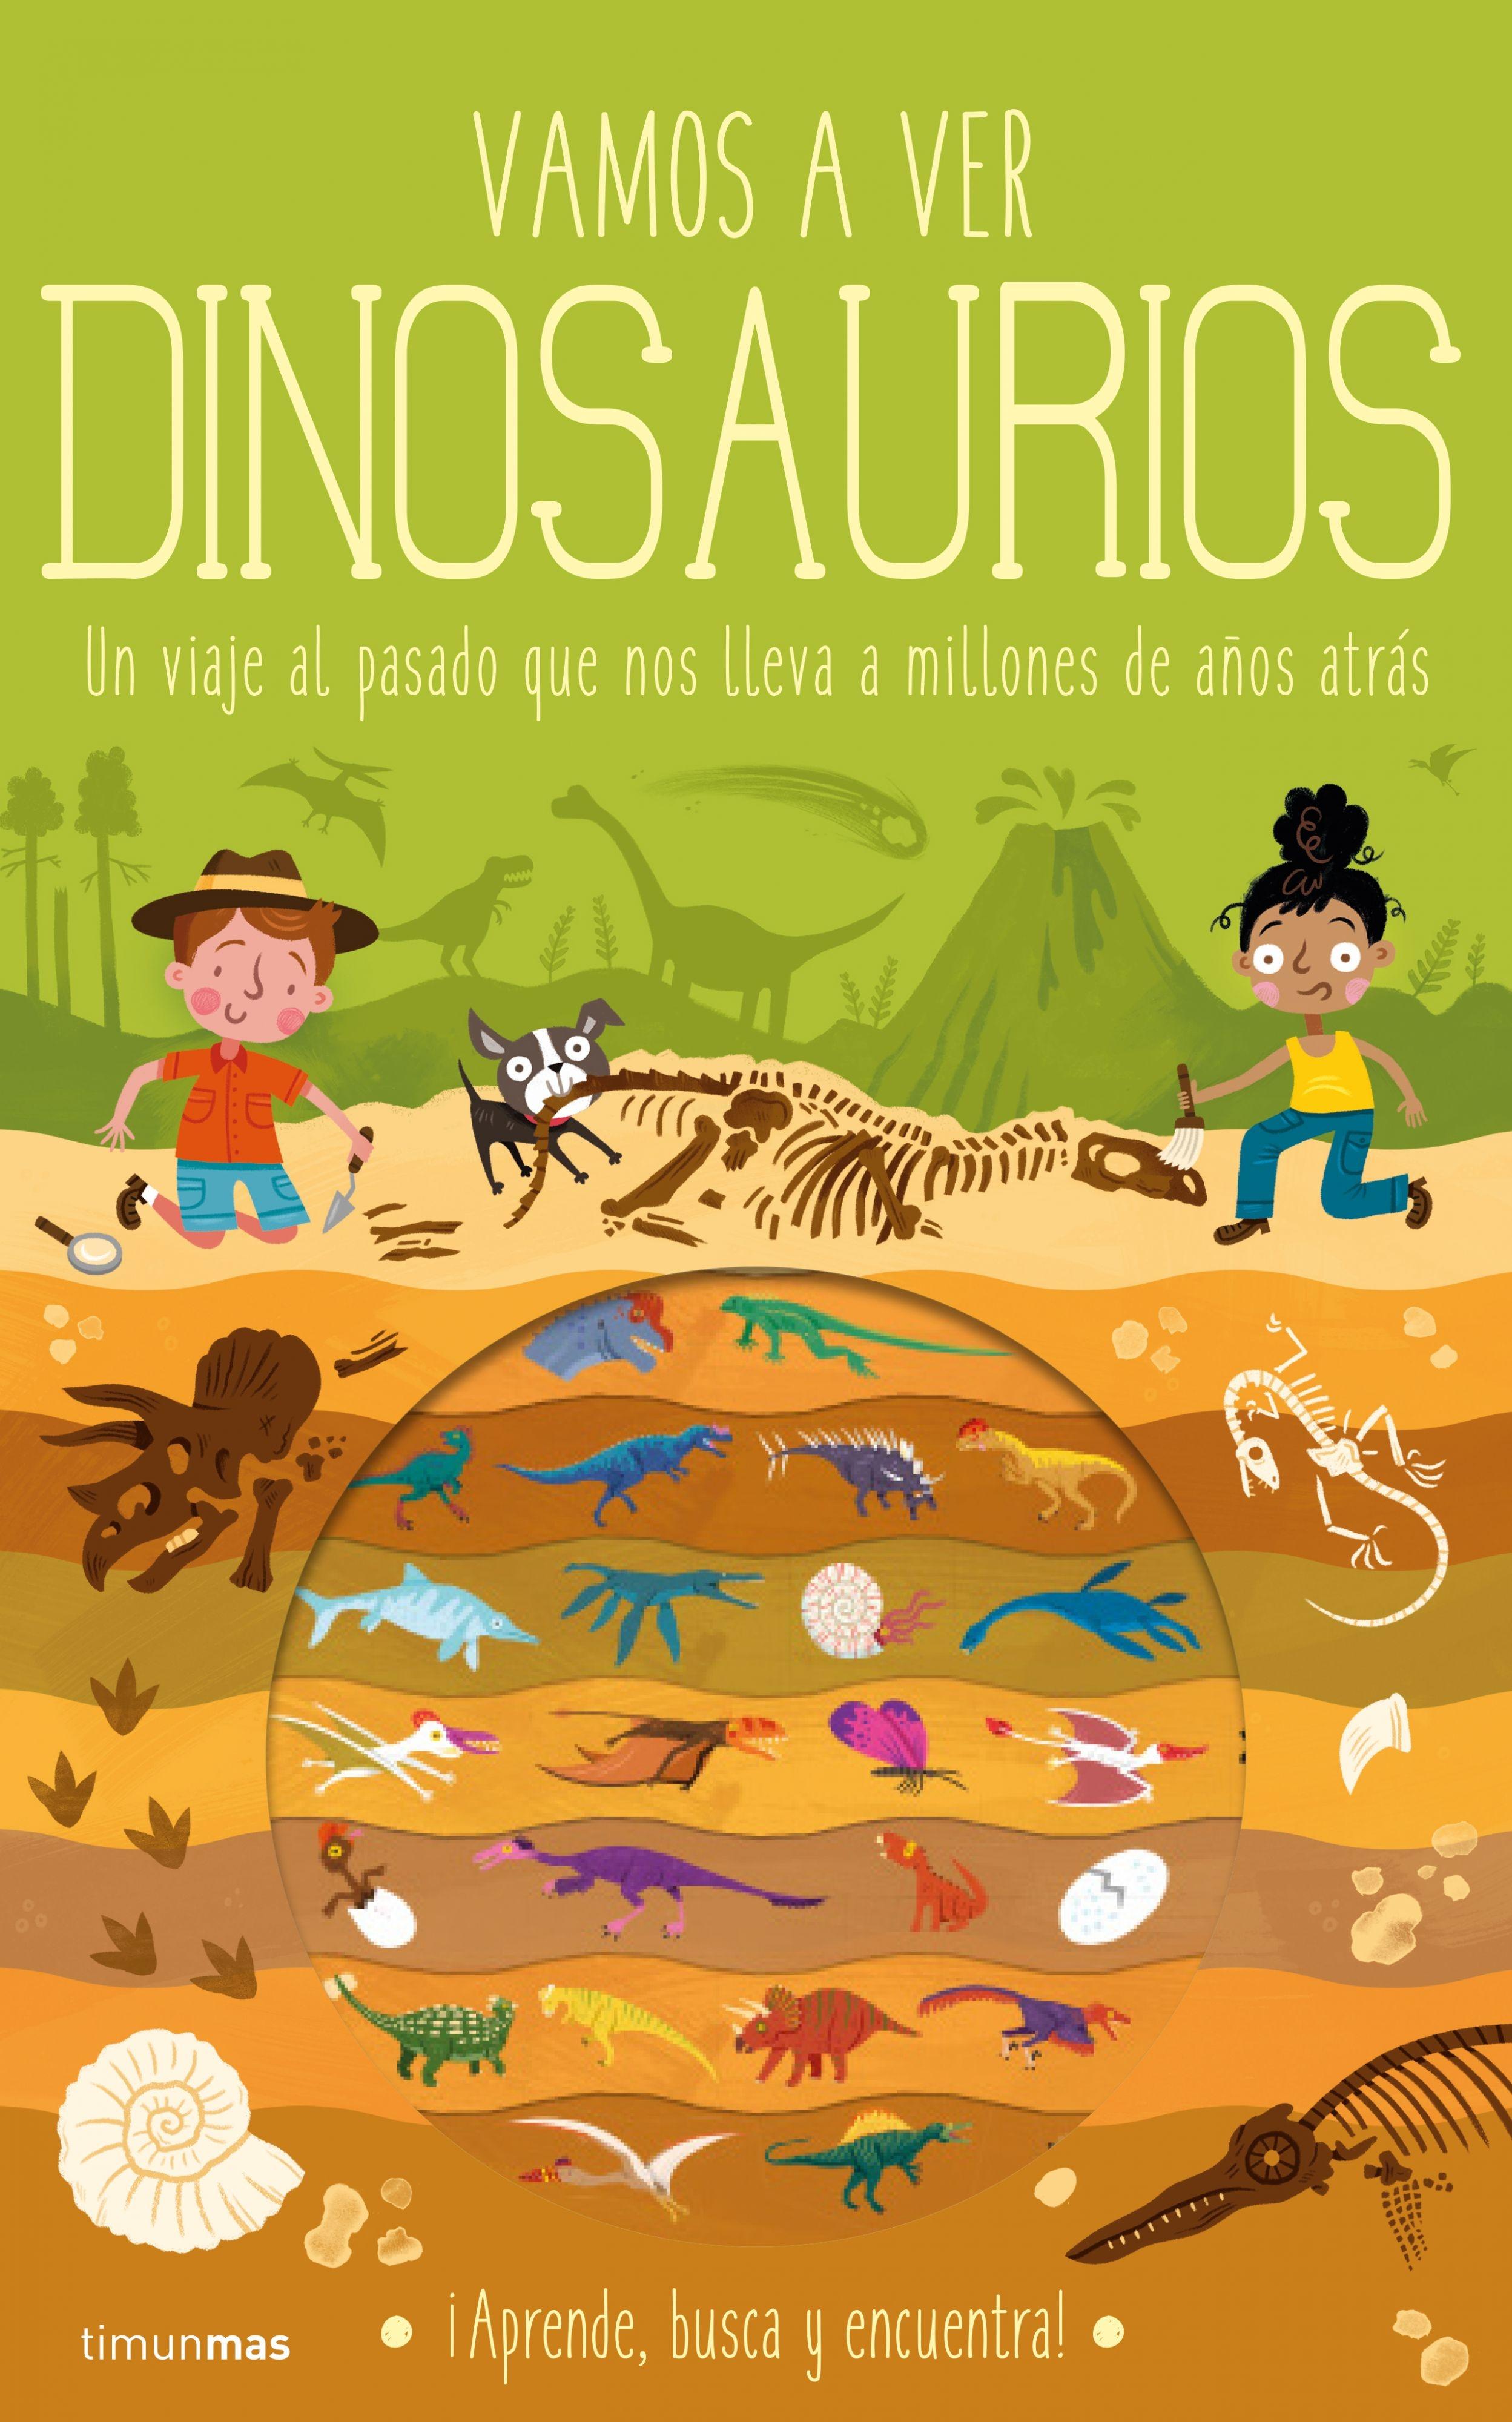 Vamos a ver dinosaurios "Un viaje al pasado que nos lleva a millones de años atrás"